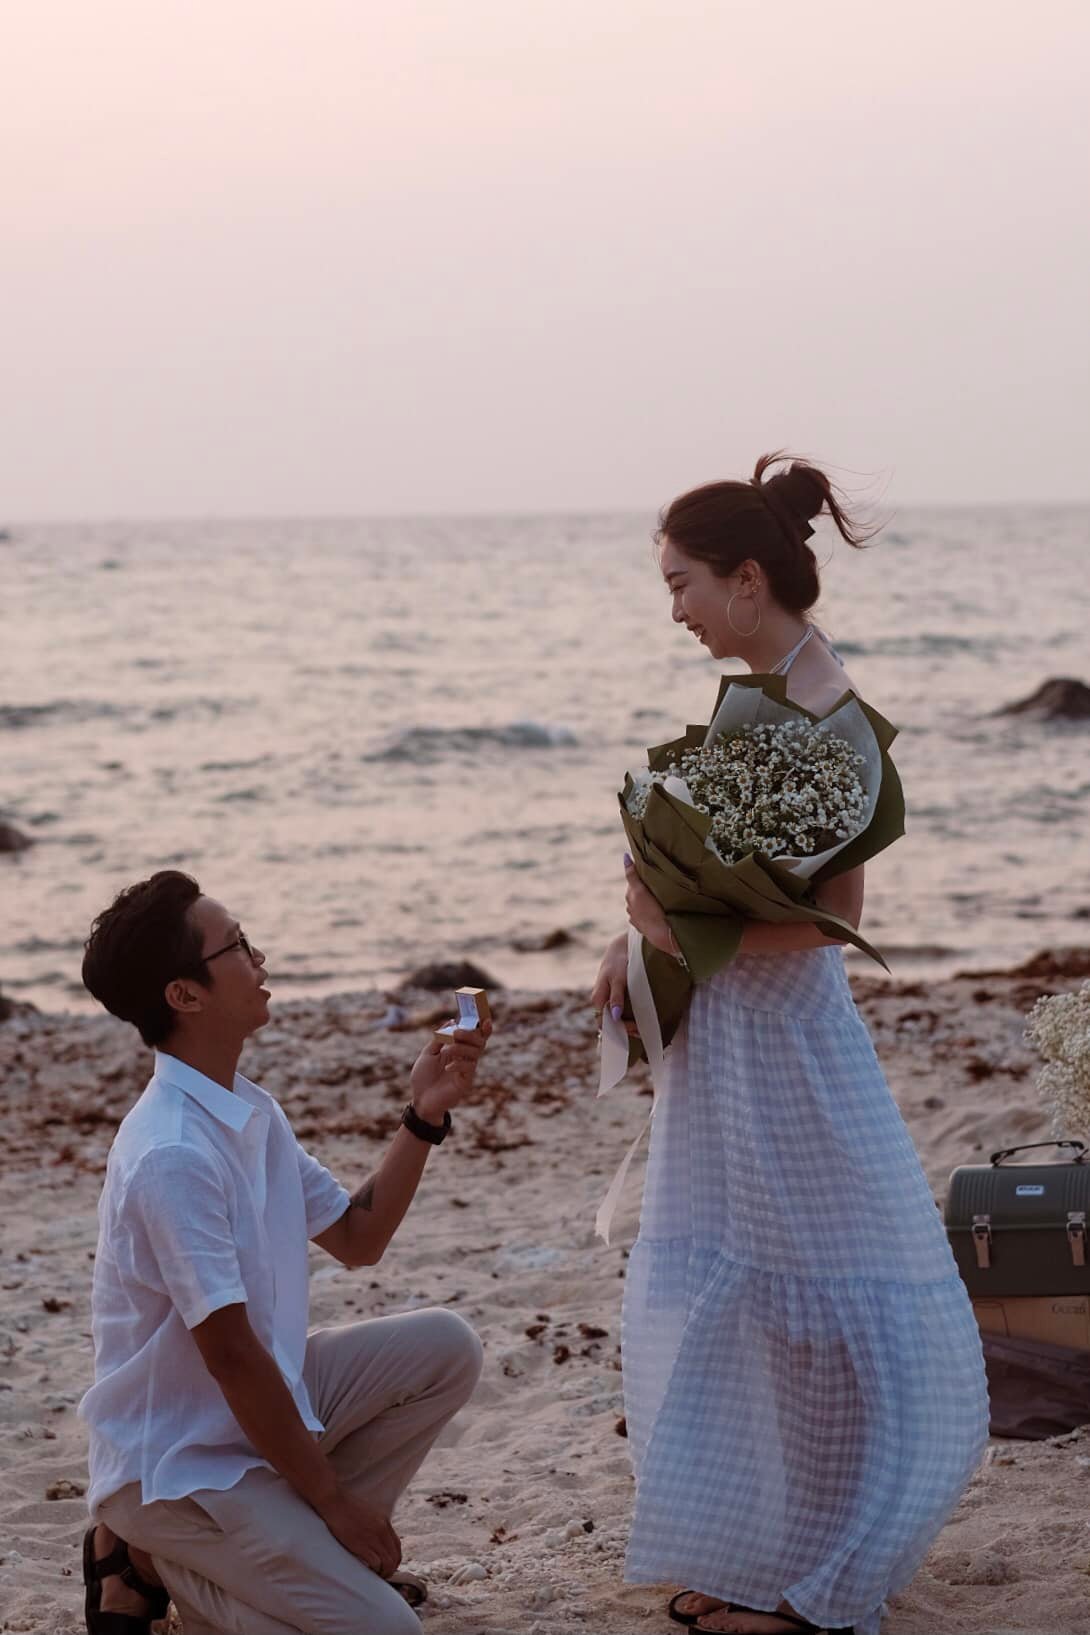 Làng chài ven biển Phú Quý - địa điểm du lịch nổi tiếng đối với giới trẻ gây bất ngờ khi trở thành không gian cầu hôn cực lãng mạn  - Ảnh 4.